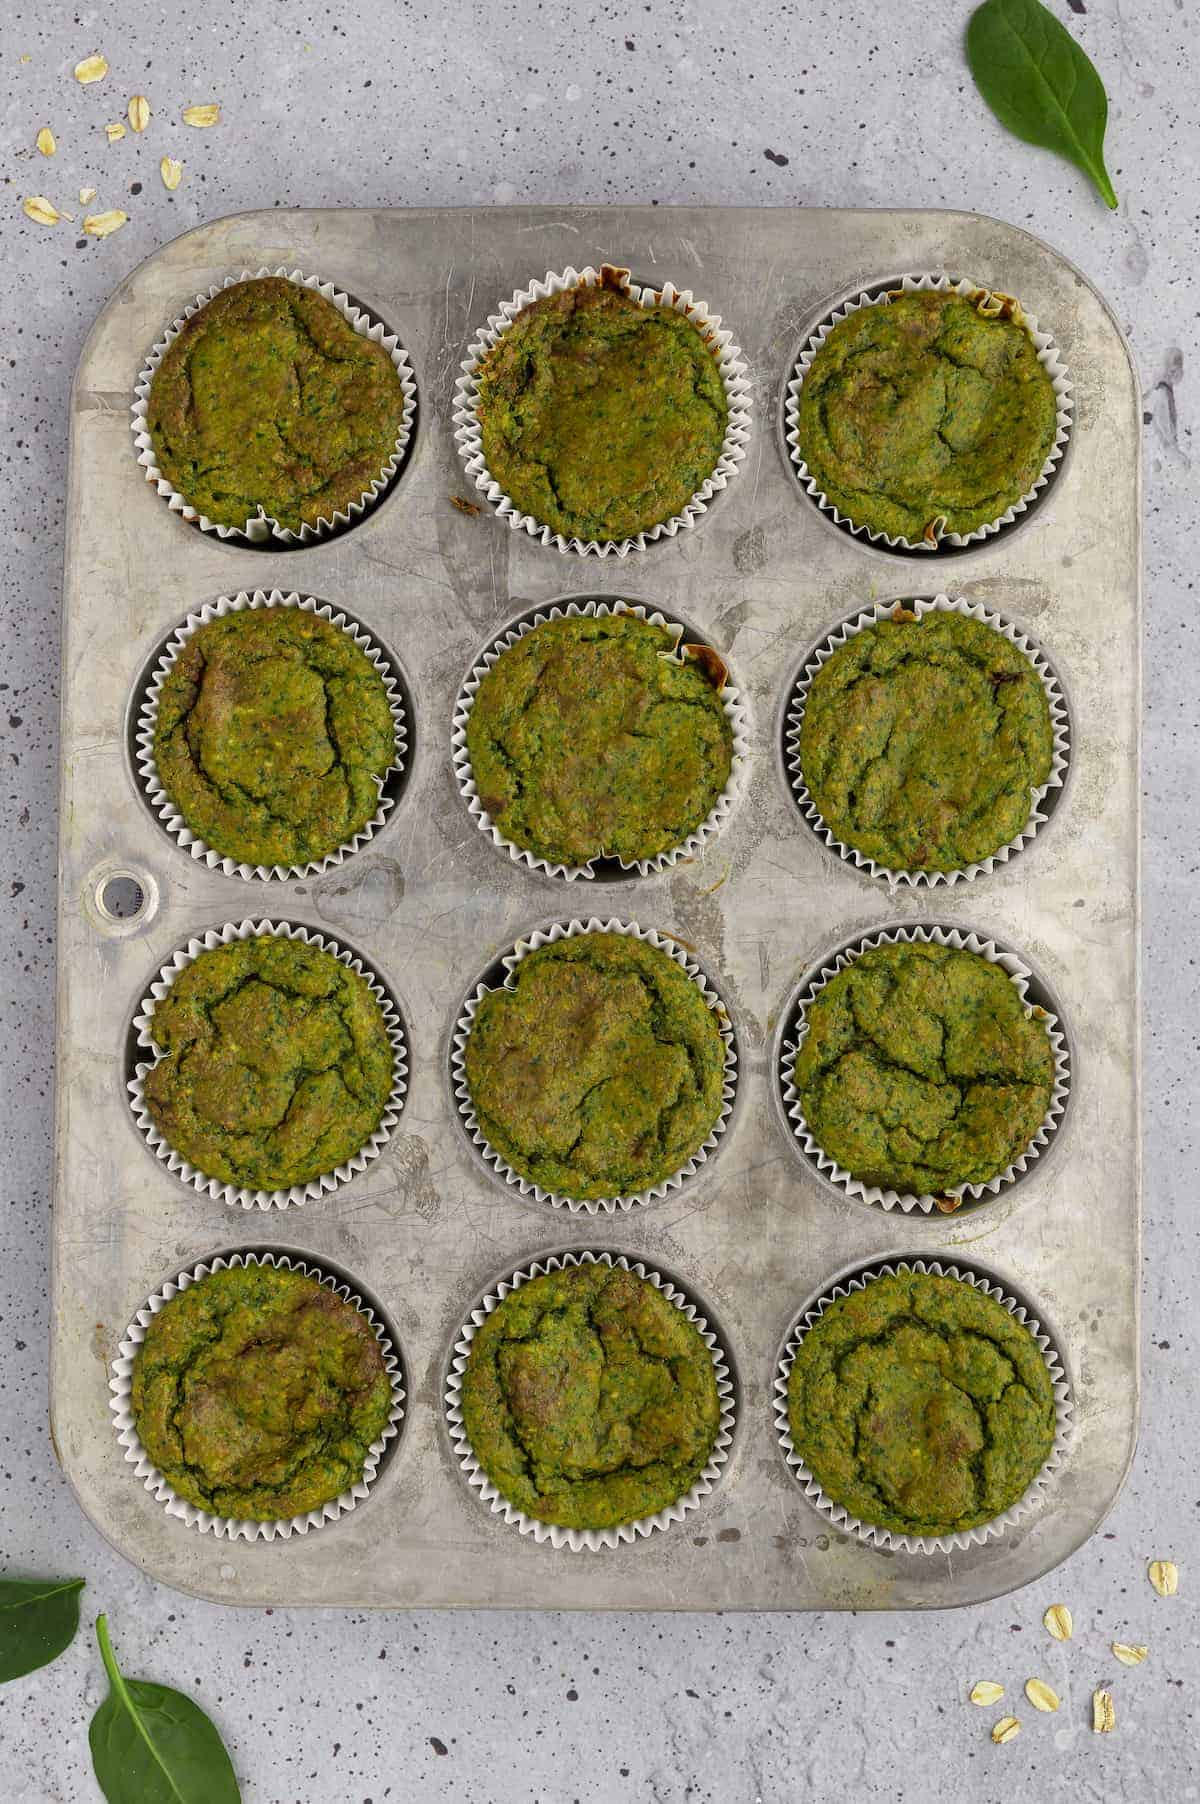 Spinach banana muffins in a muffin tin.